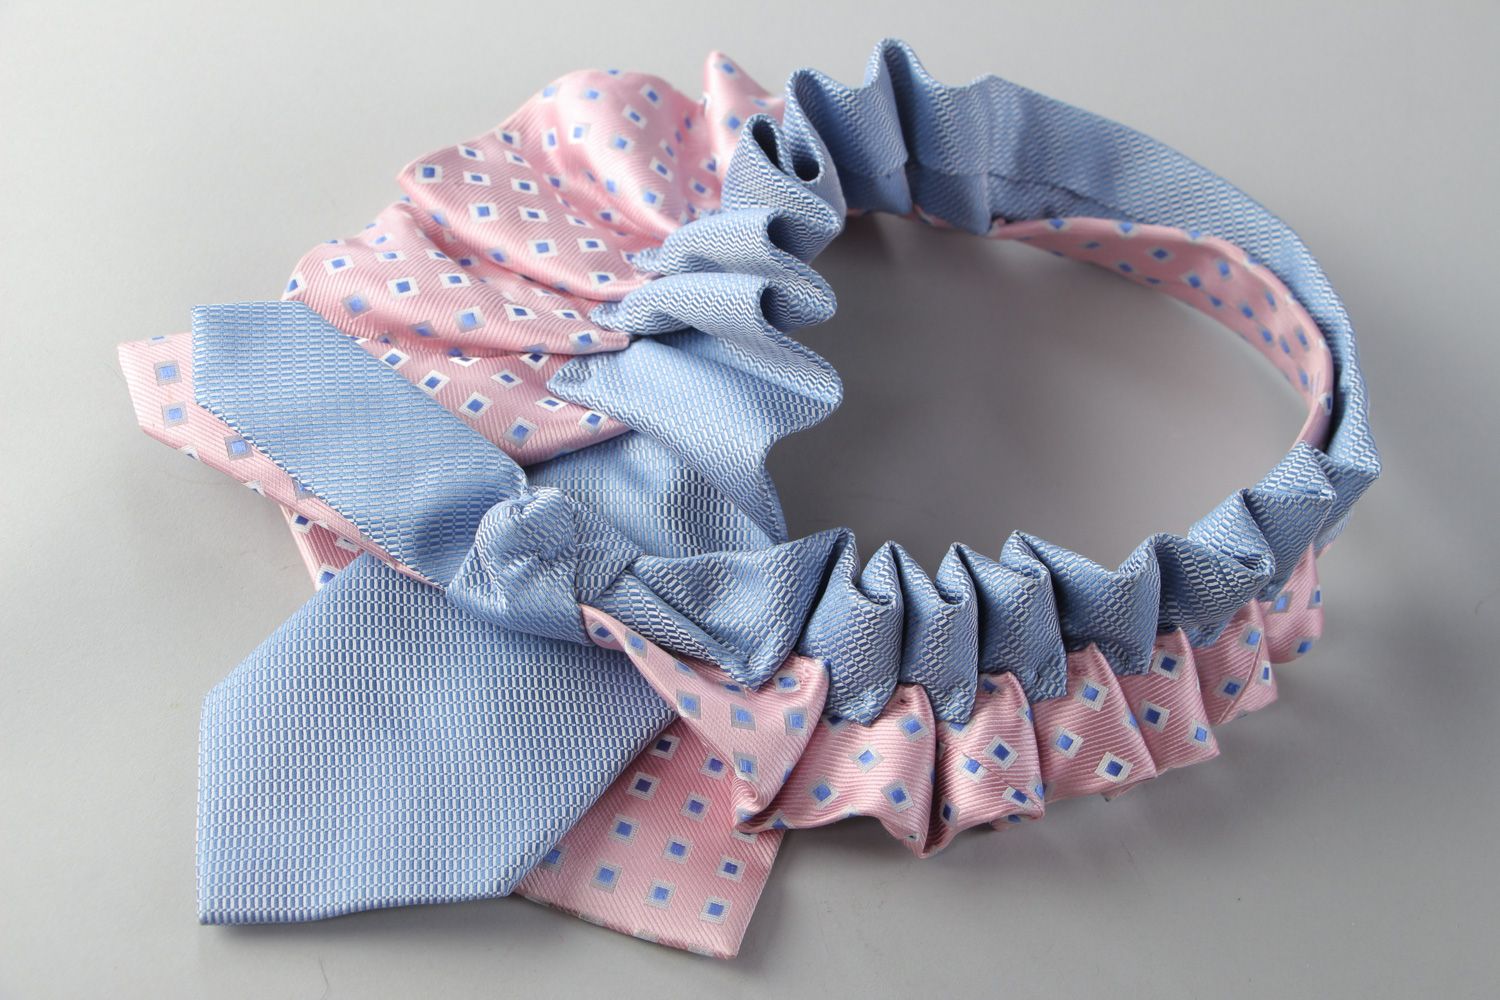 Handmade Collier aus Stoff in Form von Kragen hellblau und rosafarbig wunderbar foto 2